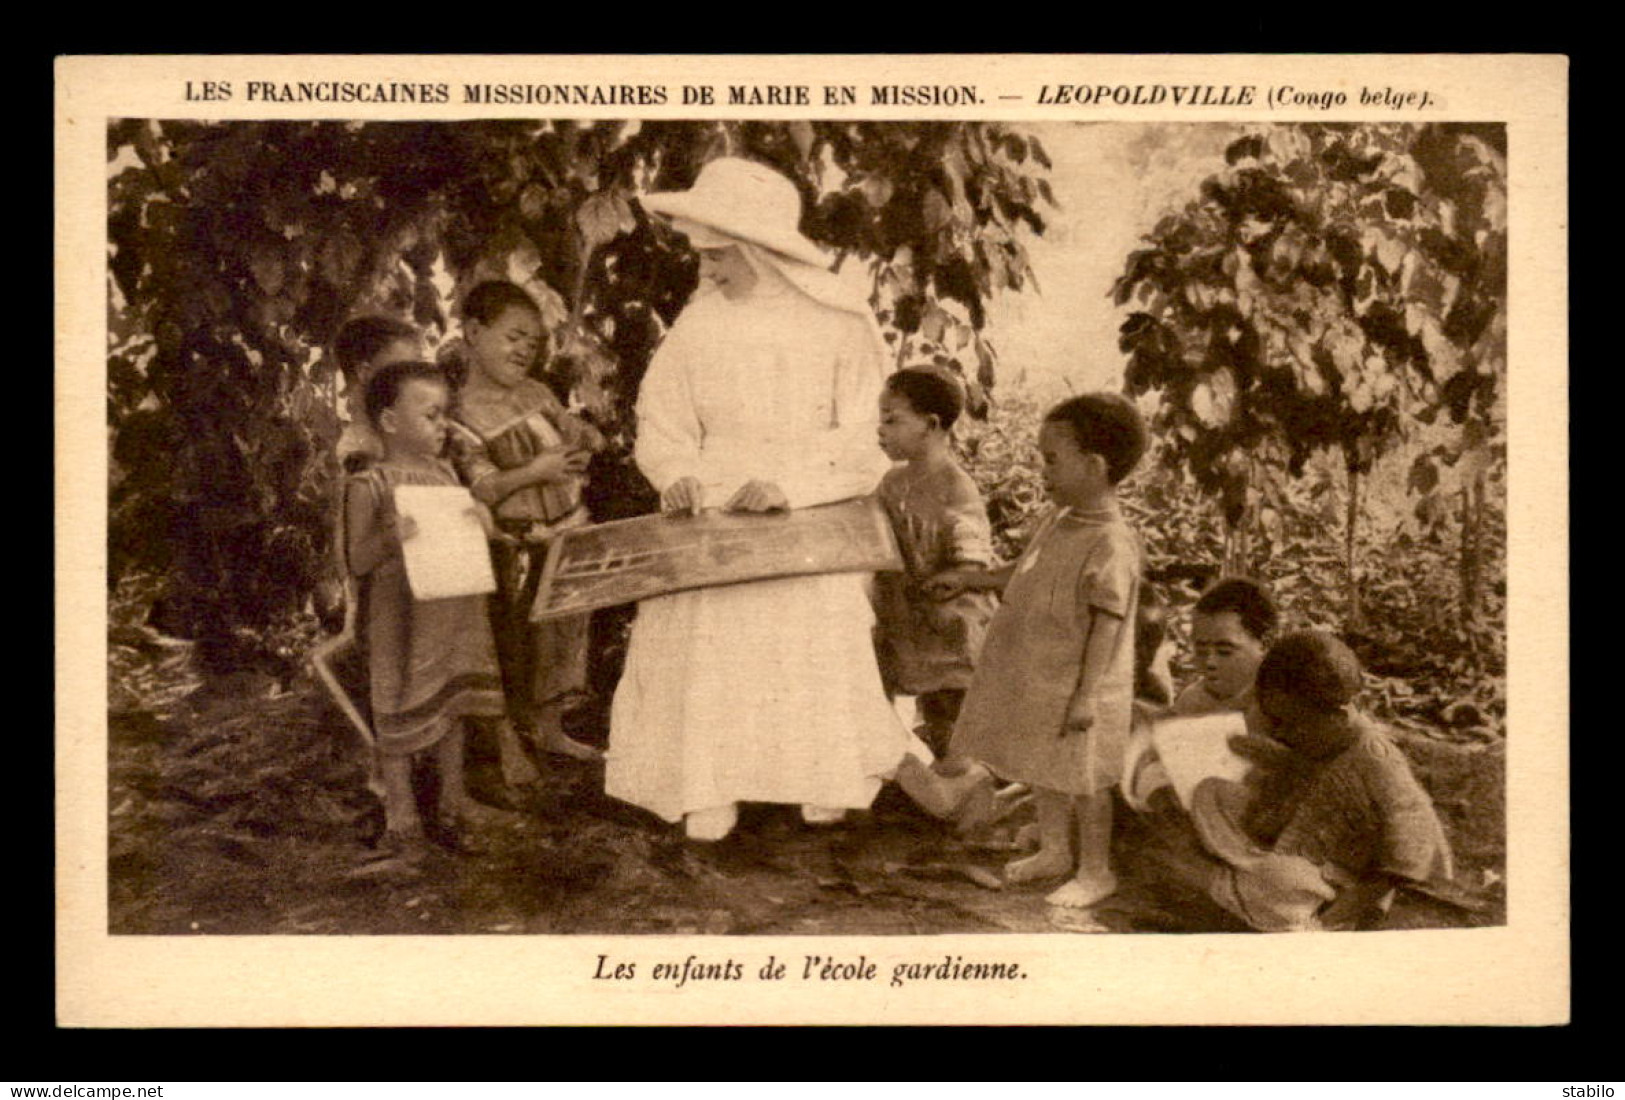 MISSIONS - LEOPOLDVILLE (CONGO-BELGE)  - FRANCISCAINES DE MARIE EN MISSION - LES ENFANTS DE L'ECOLE GARDIENNE - Missioni